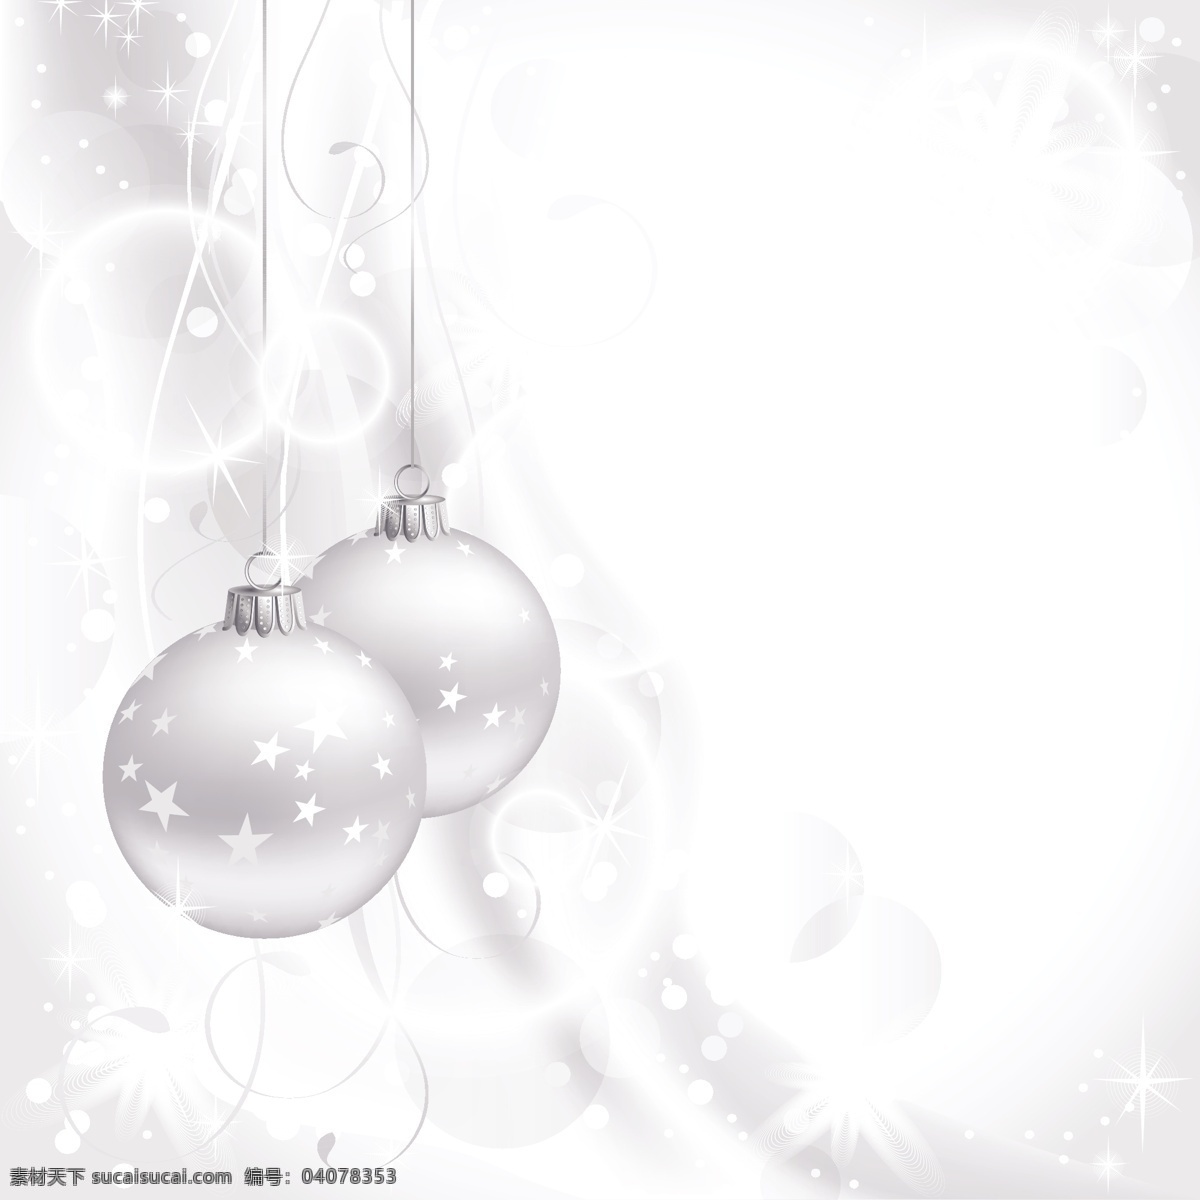 圣诞 水晶球 矢量 圣诞节 圣诞水晶 水晶 吊球 向量 圣诞球 自由 矢量圣诞水晶 圣诞水晶球 白色